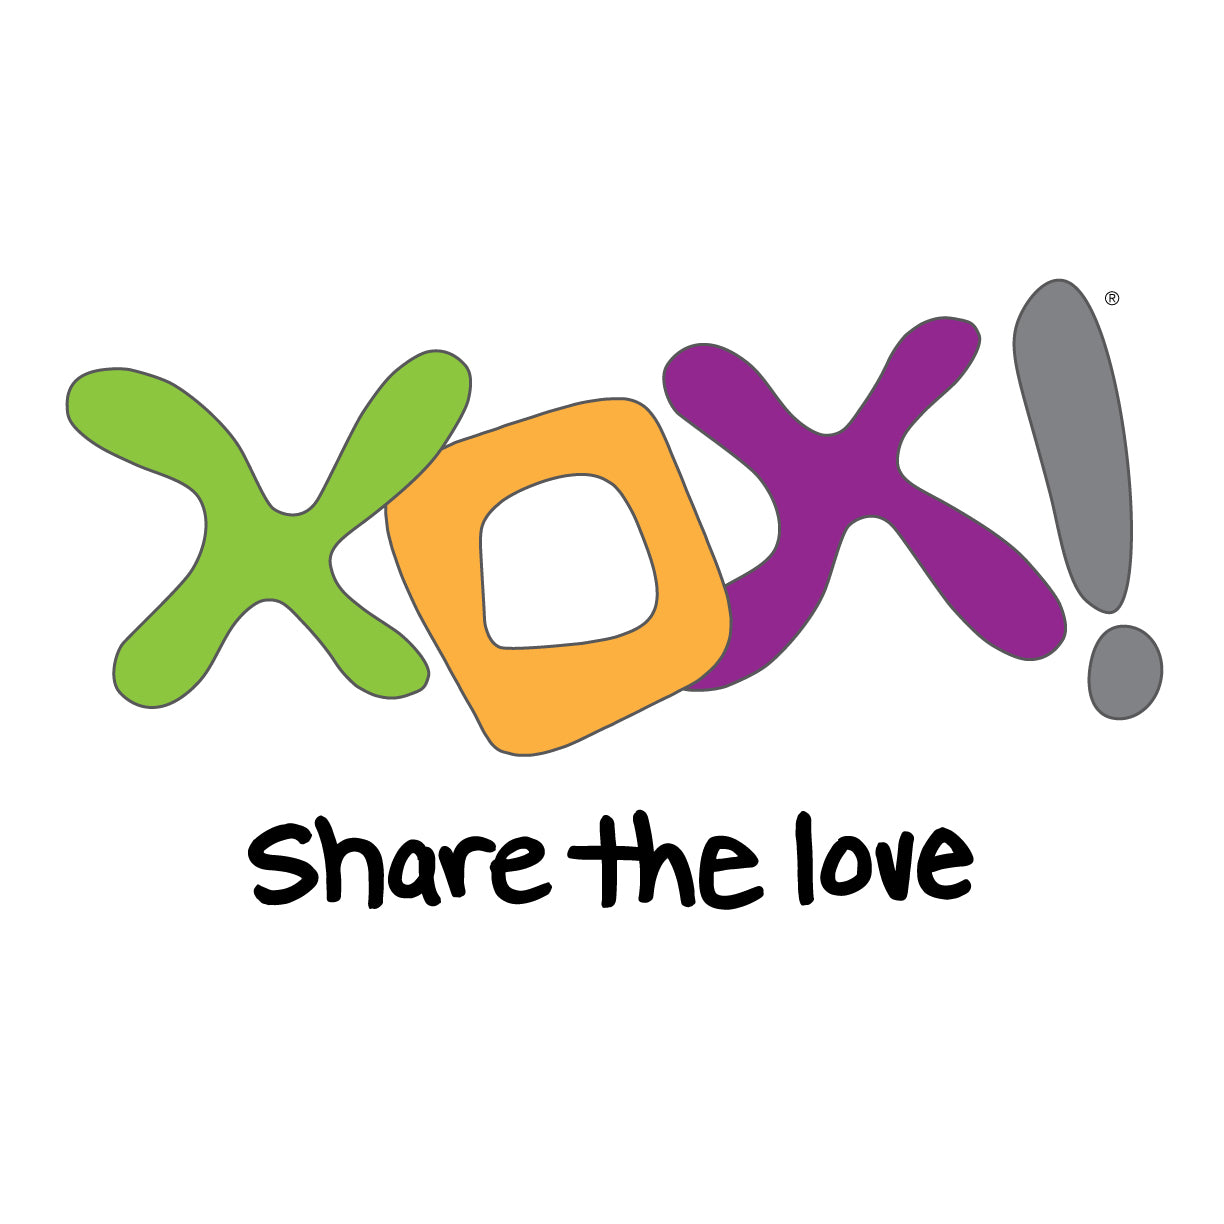 XOX! Share the Love